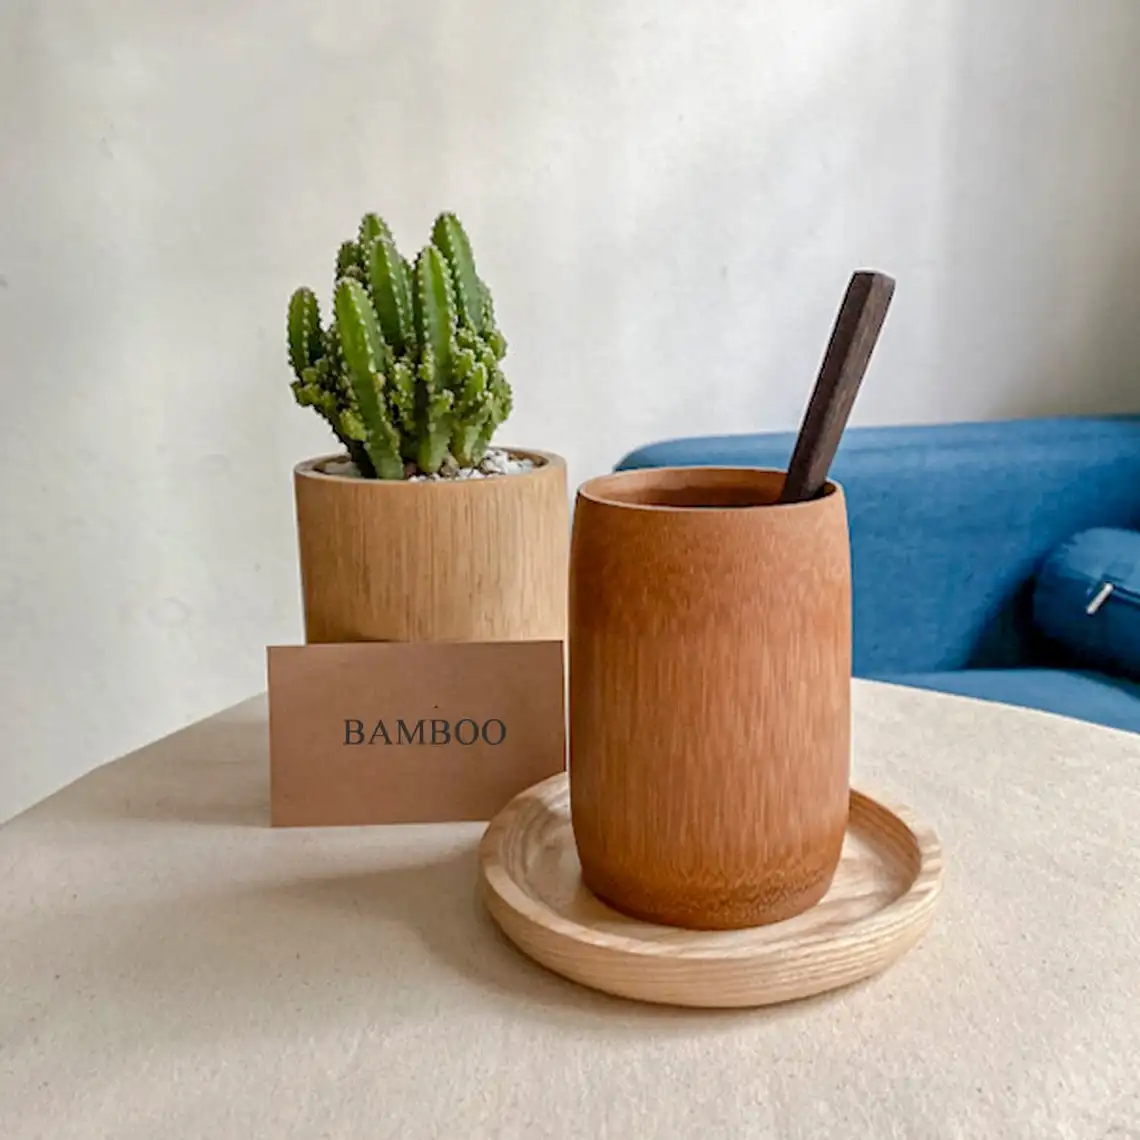 كوب خشبي من الخيزران مصنوع يدويًا كوب صديق للبيئة مصنوع في فيتنام خلاط محمول زجاجة زجاجية فنجان قهوة